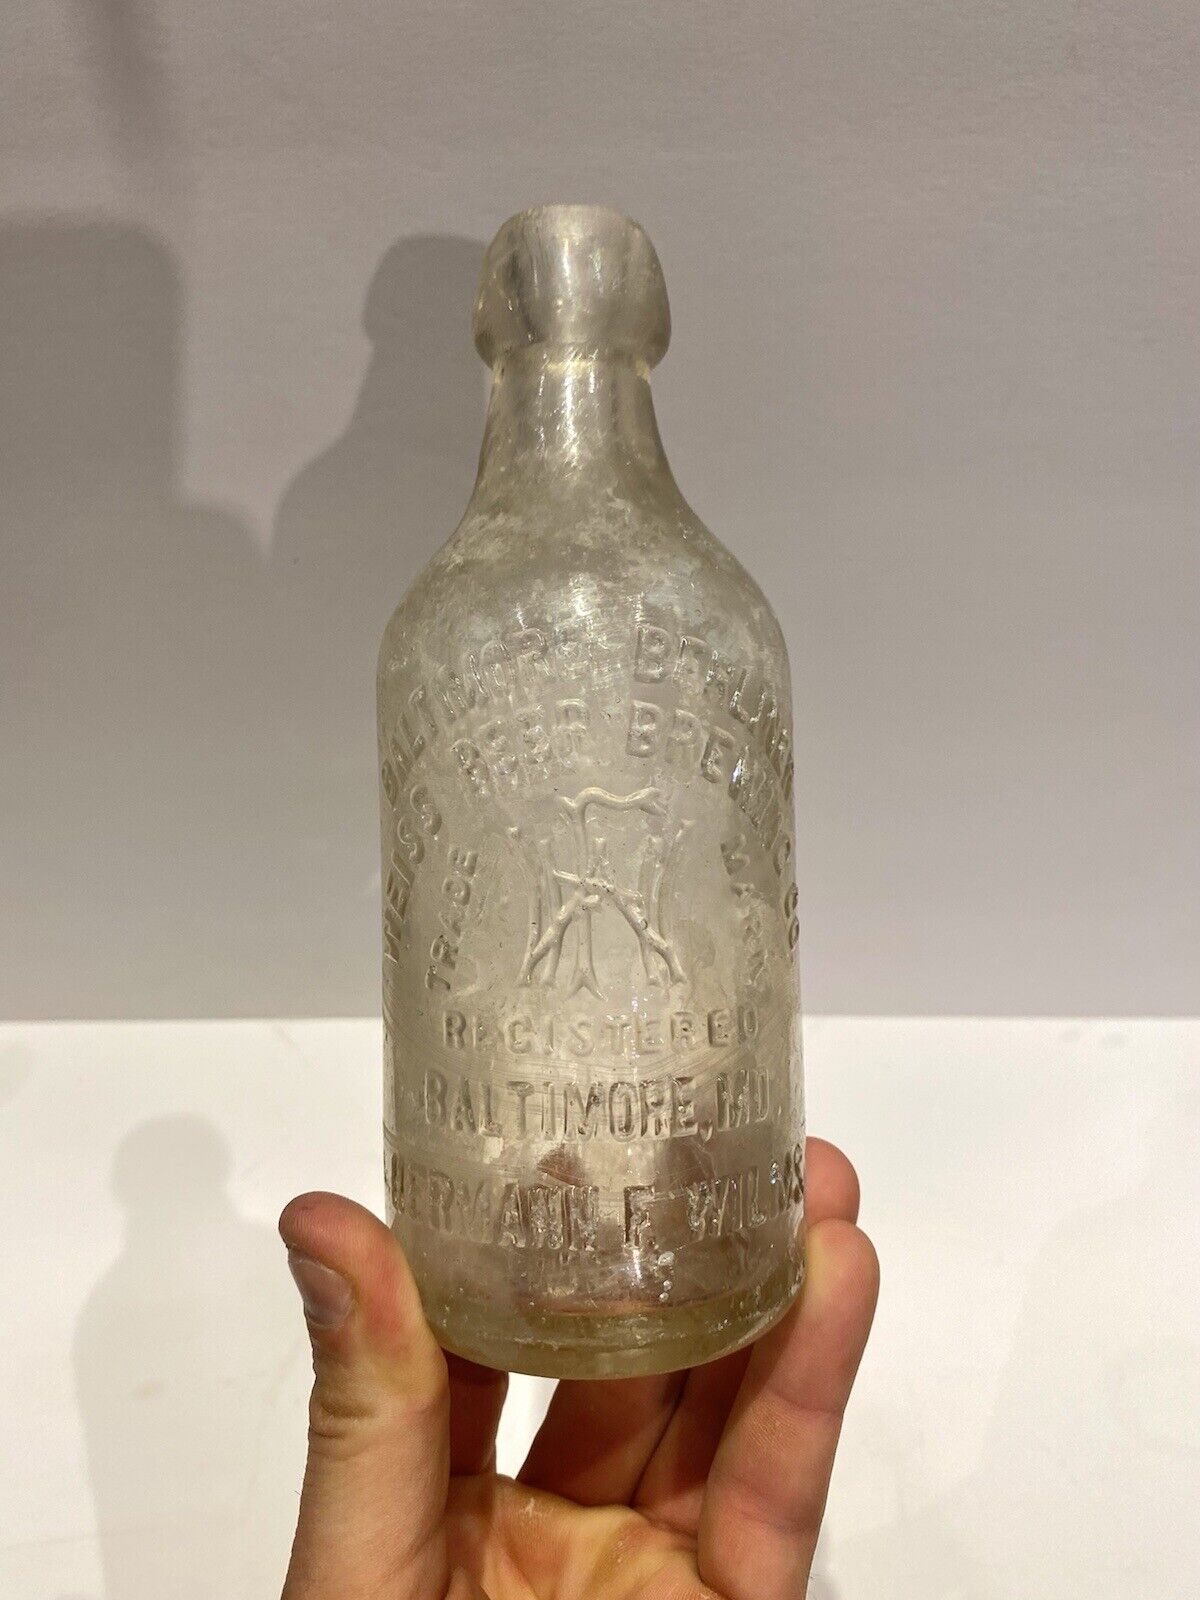 Antique 1880s/90s Weiss Beer Bottle Blob Top - Baltimore Berliner